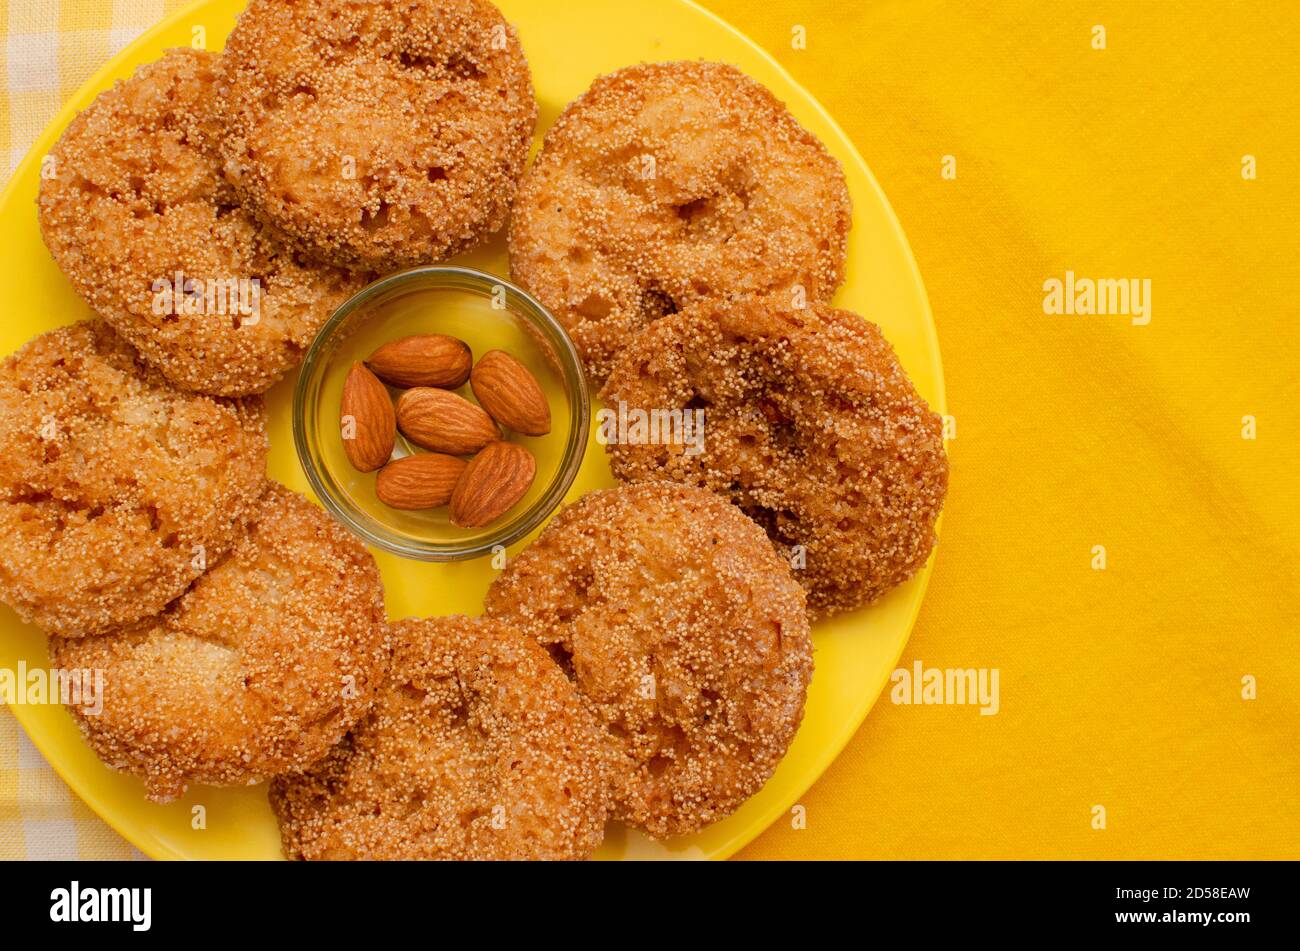 Anarasa eine typische Maharashtrian Delikatesse in einem gelb gefärbten Teller angeordnet. Indischer Gebäck-ähnlicher Snack, der häufig mit dem Diwali-Festival in Verbindung gebracht wird Stockfoto